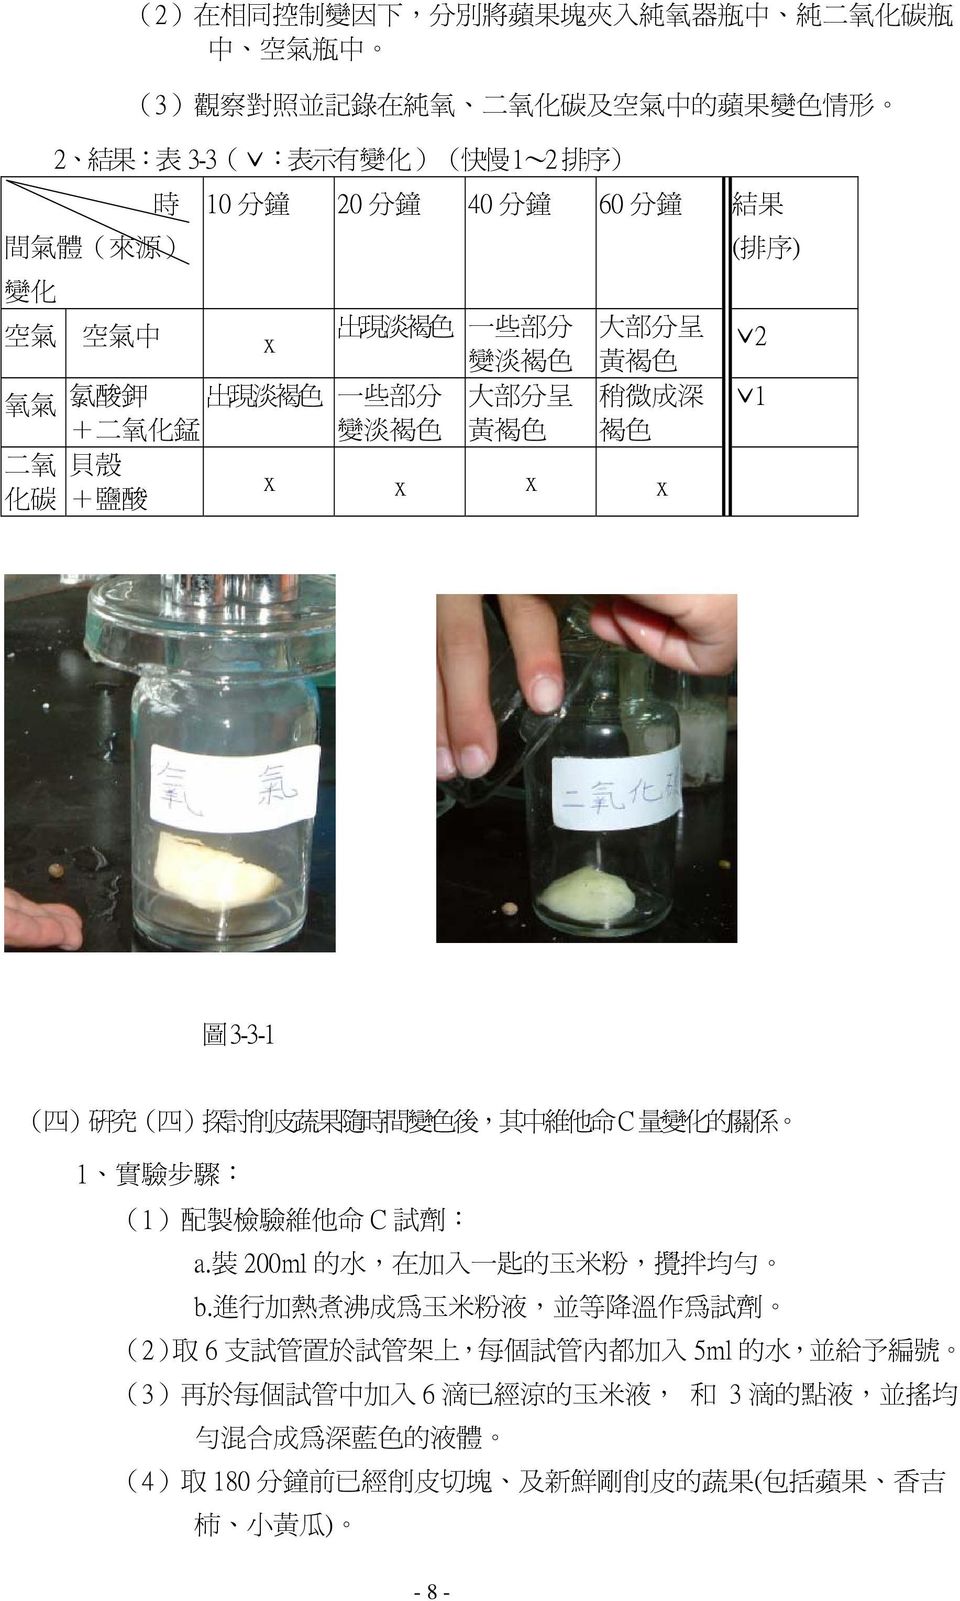 ) 探 討 削 皮 蔬 果 隨 時 間 變 後, 其 中 維 他 命 C 量 變 化 的 關 係 1 實 驗 步 驟 : (1) 配 製 檢 驗 維 他 命 C 試 劑 : a. 裝 200ml 的 水, 在 加 入 一 匙 的 玉 米 粉, 攪 拌 均 勻 b.